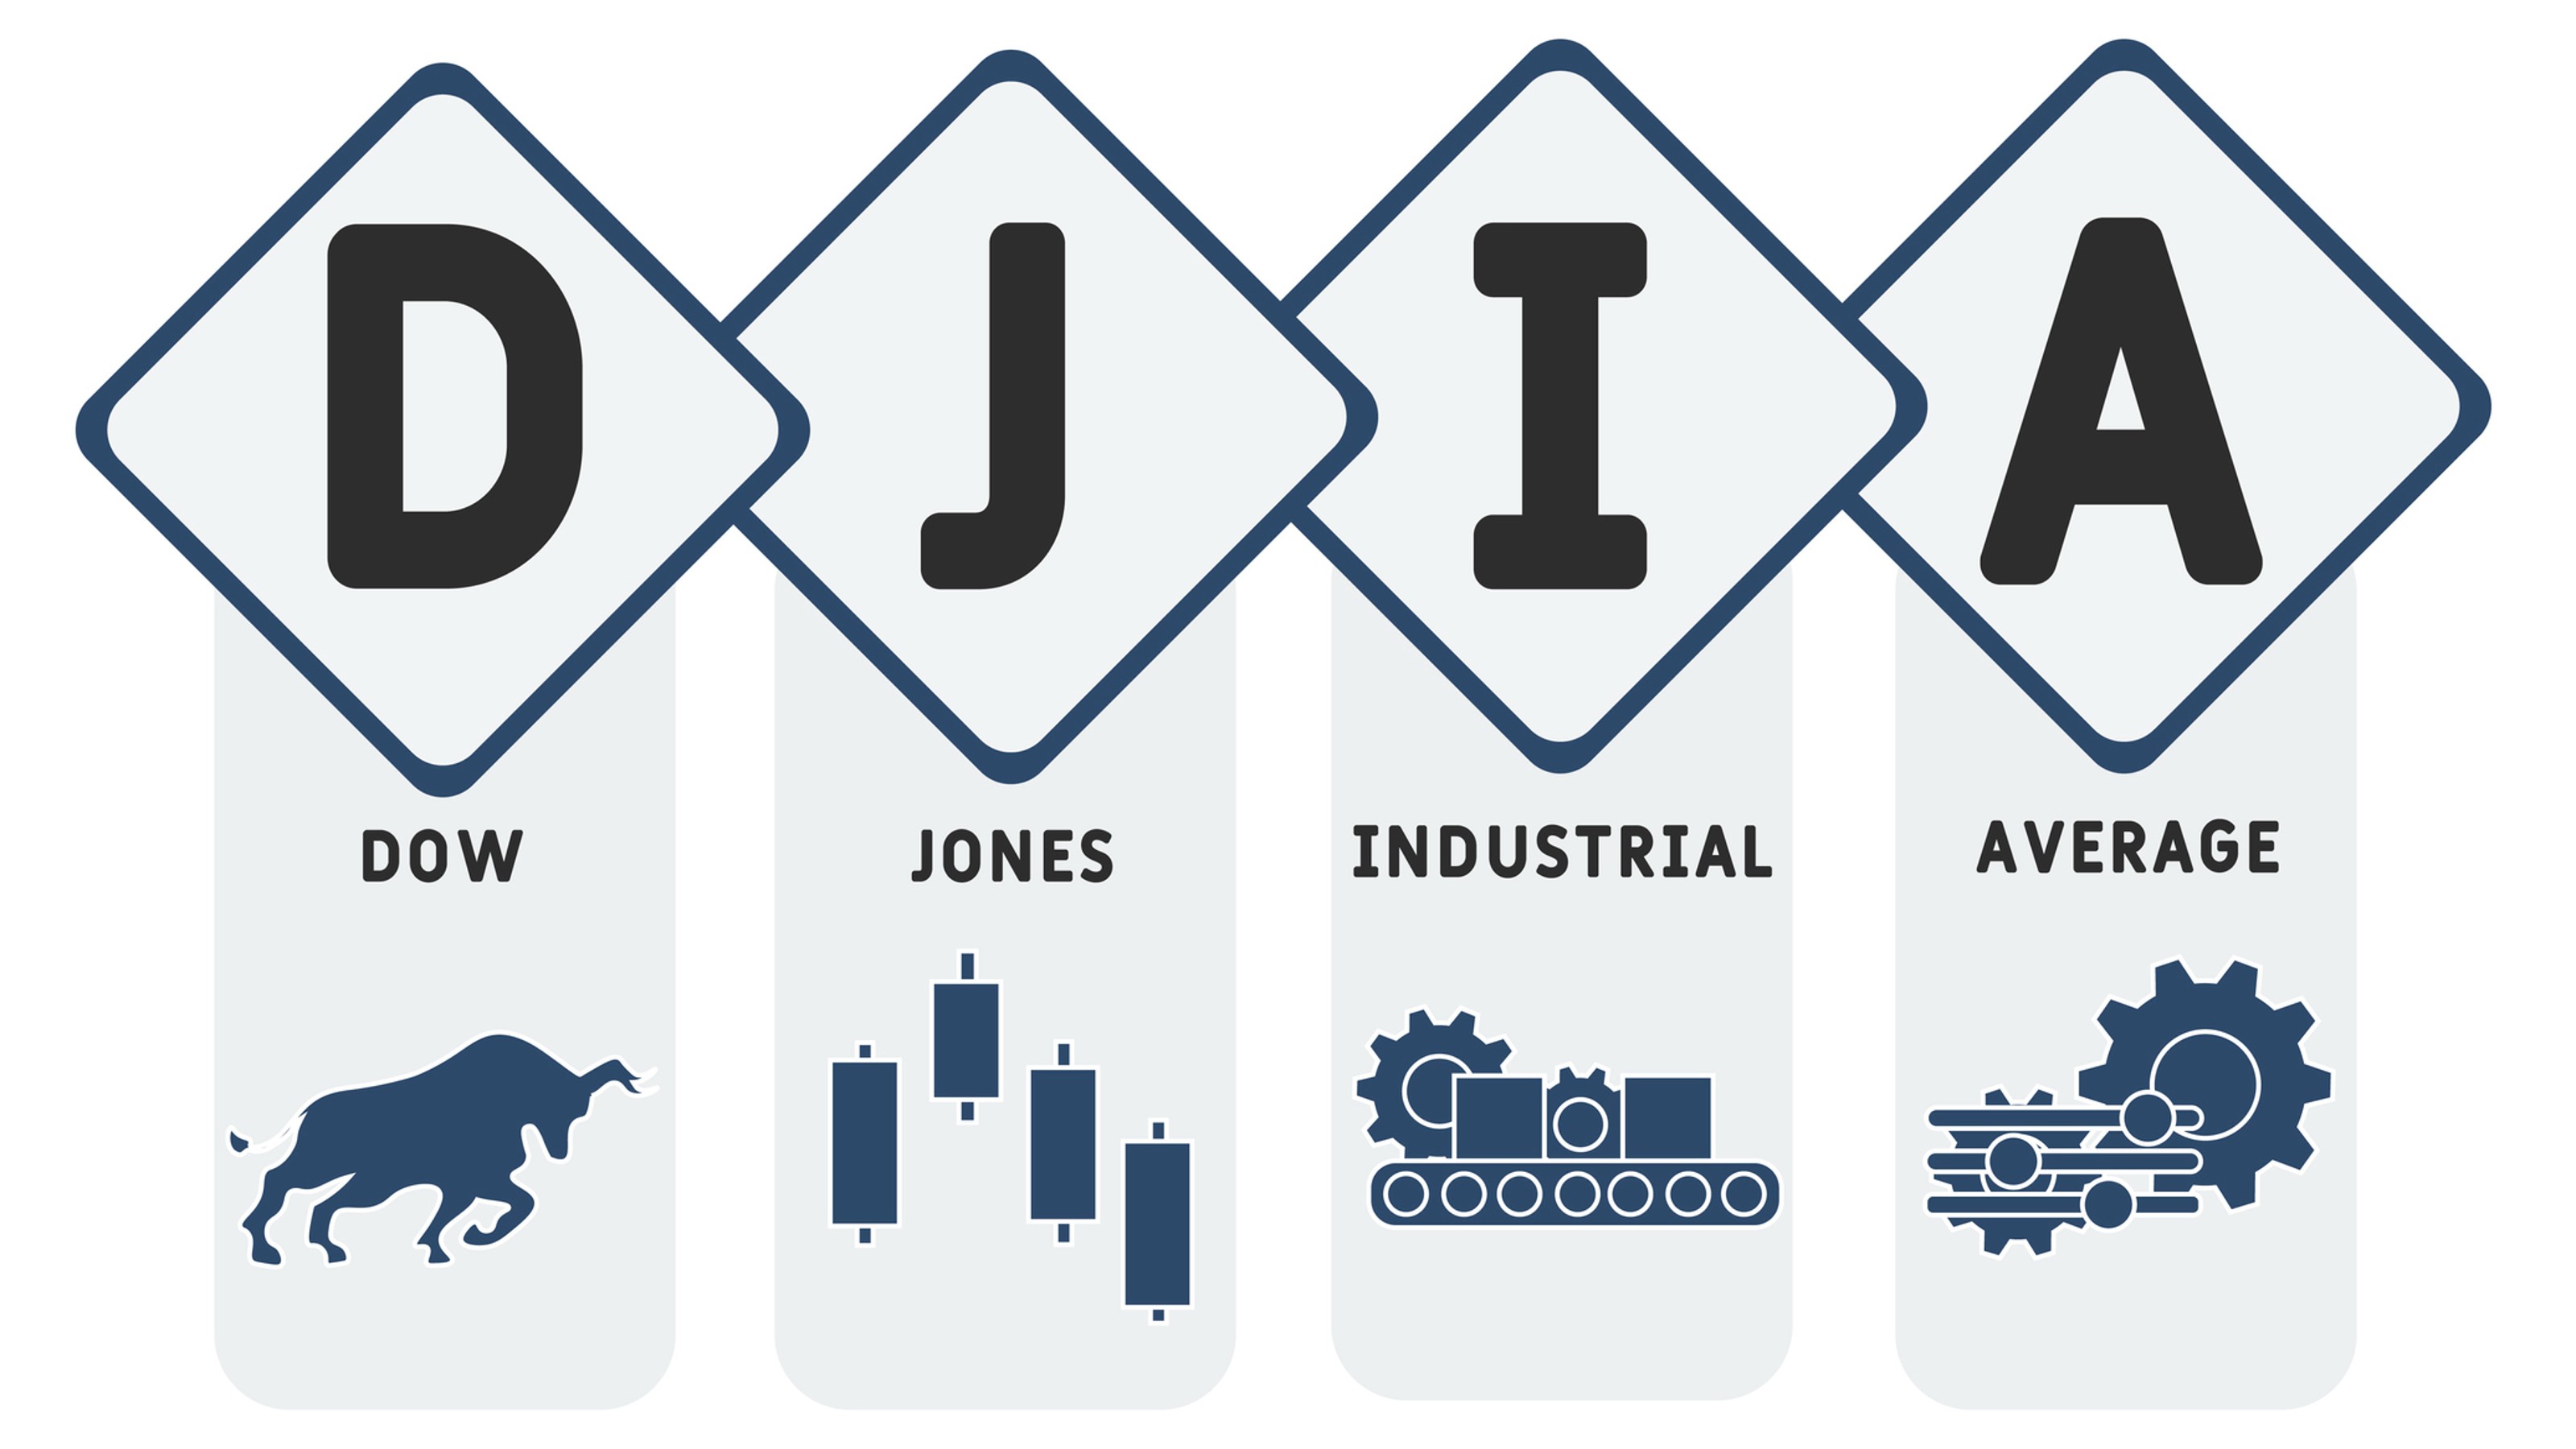 What is Dow Jones Industrial Average?